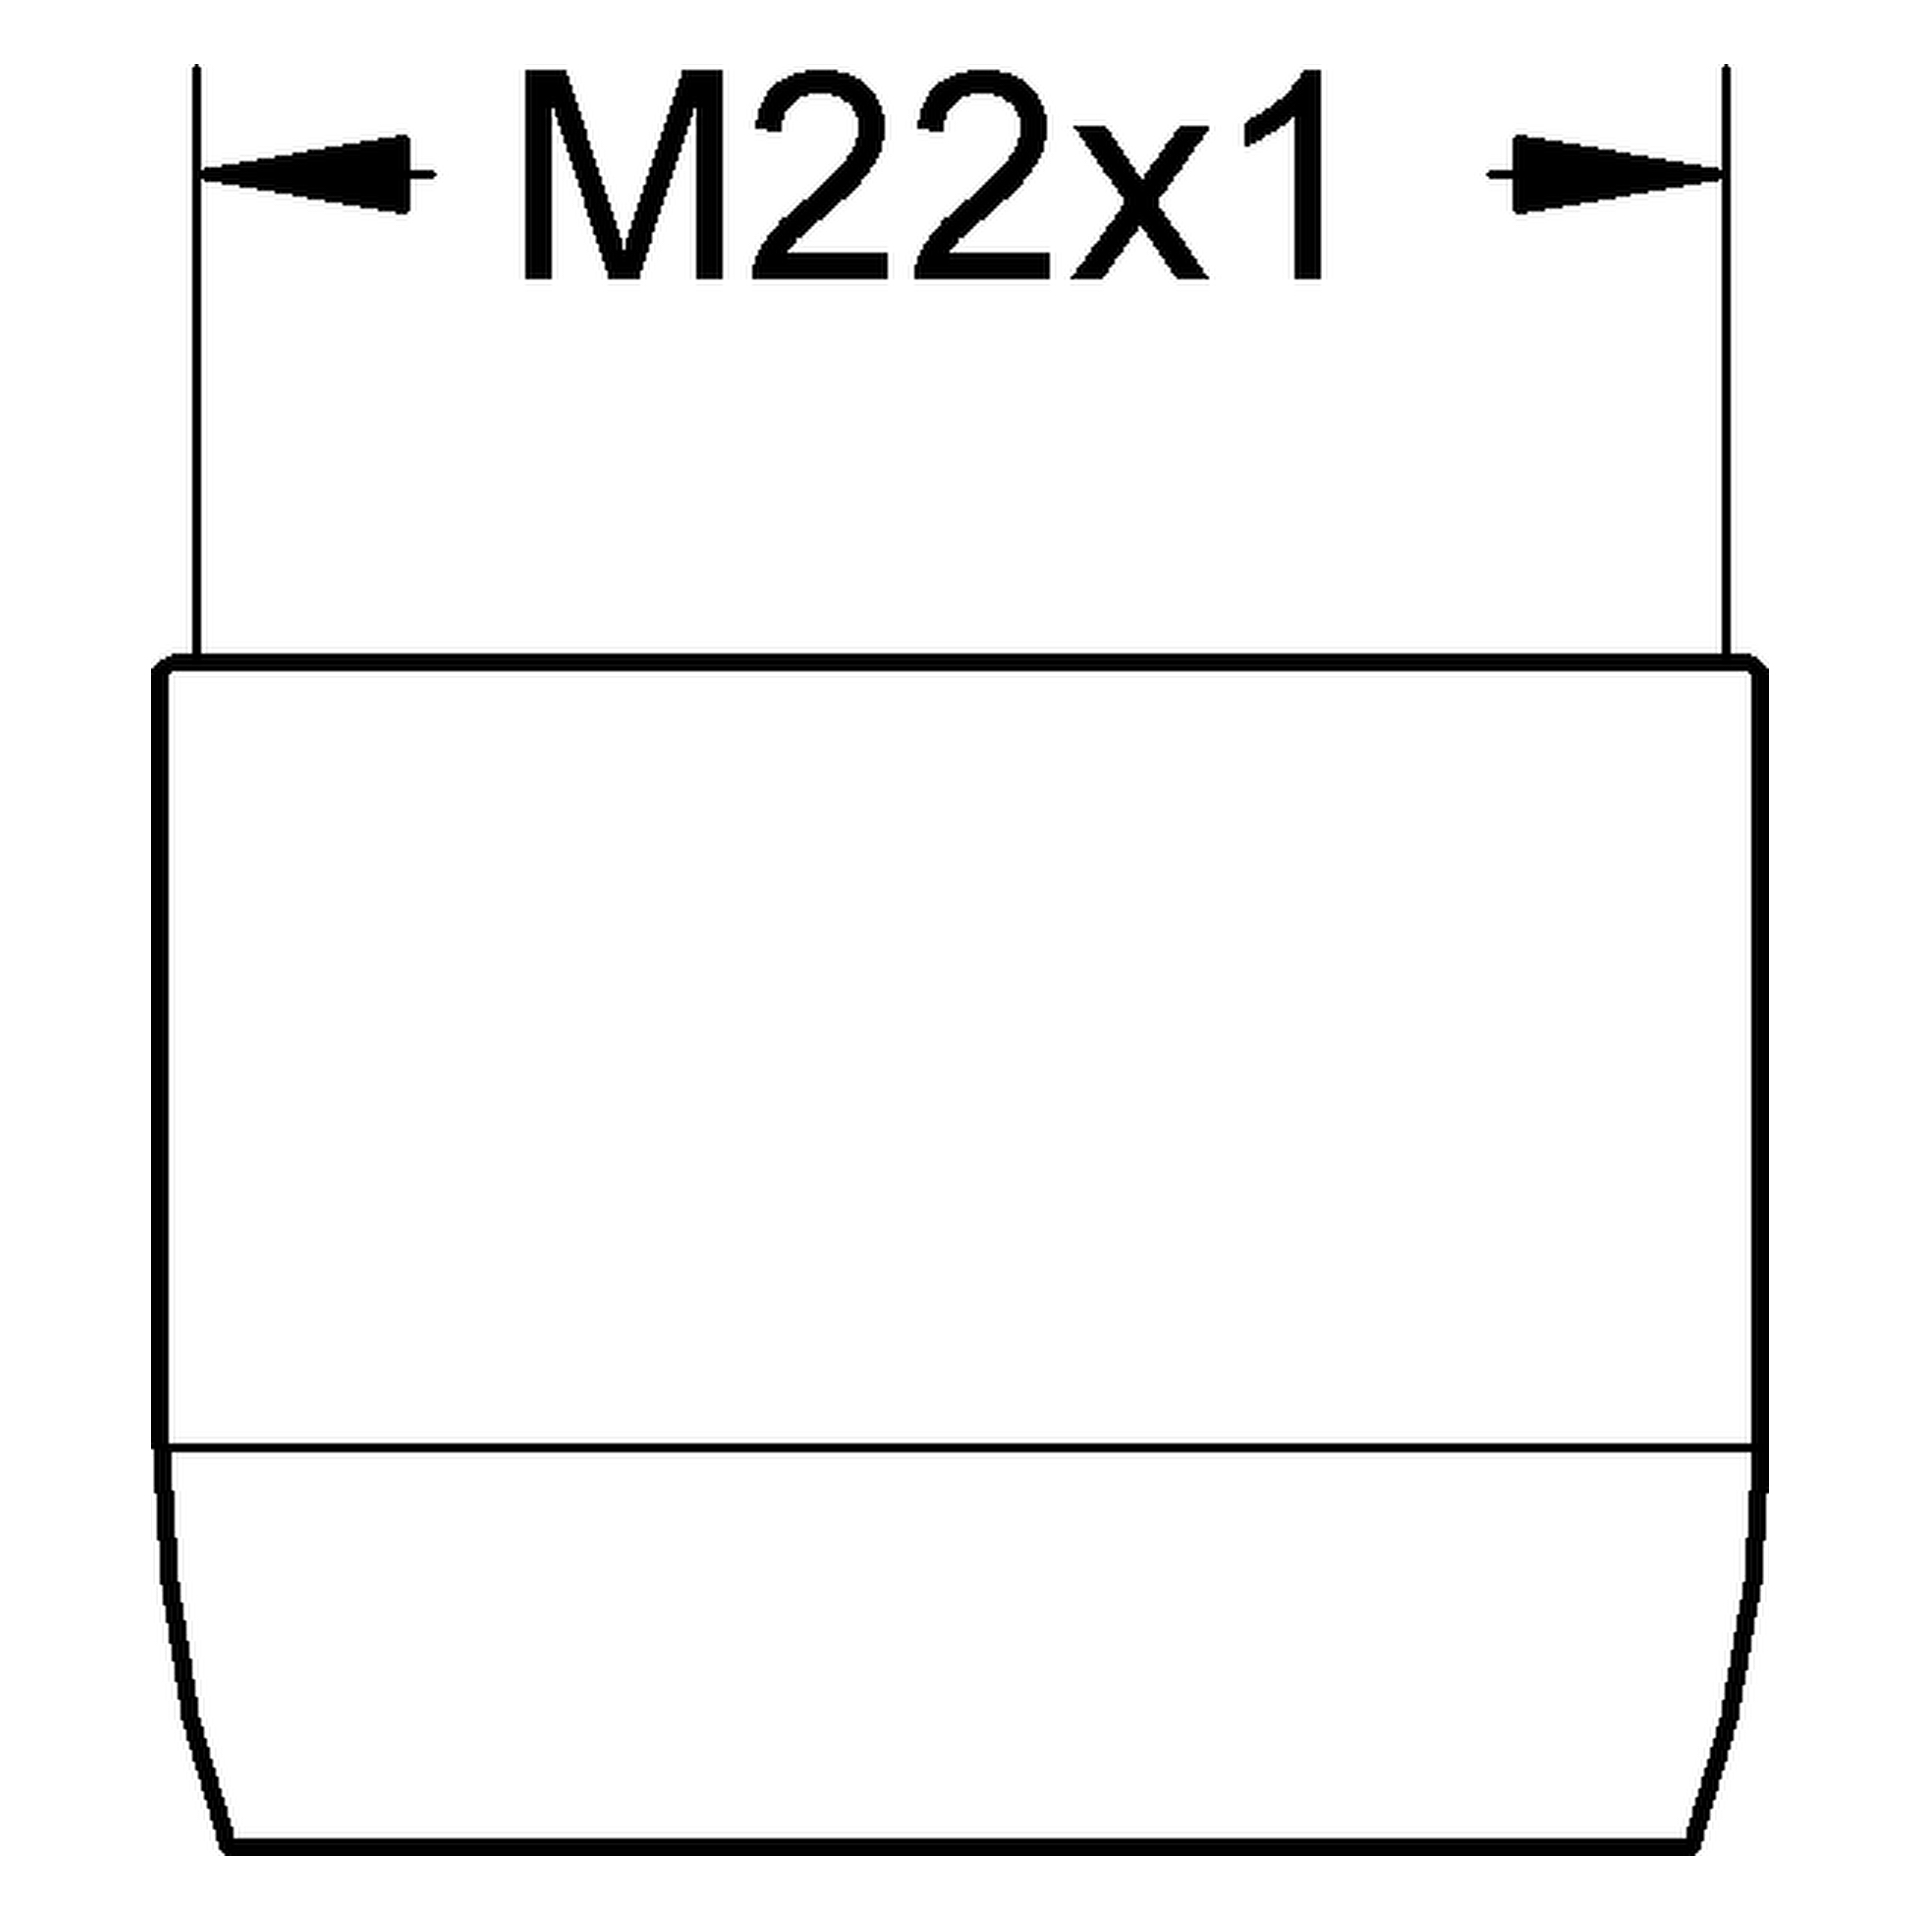 Mousseur 13928, Innengewinde, M 22 × 1, Durchflussklasse A, 13,5 - 15,0 l/min bei 3 bar, chrom